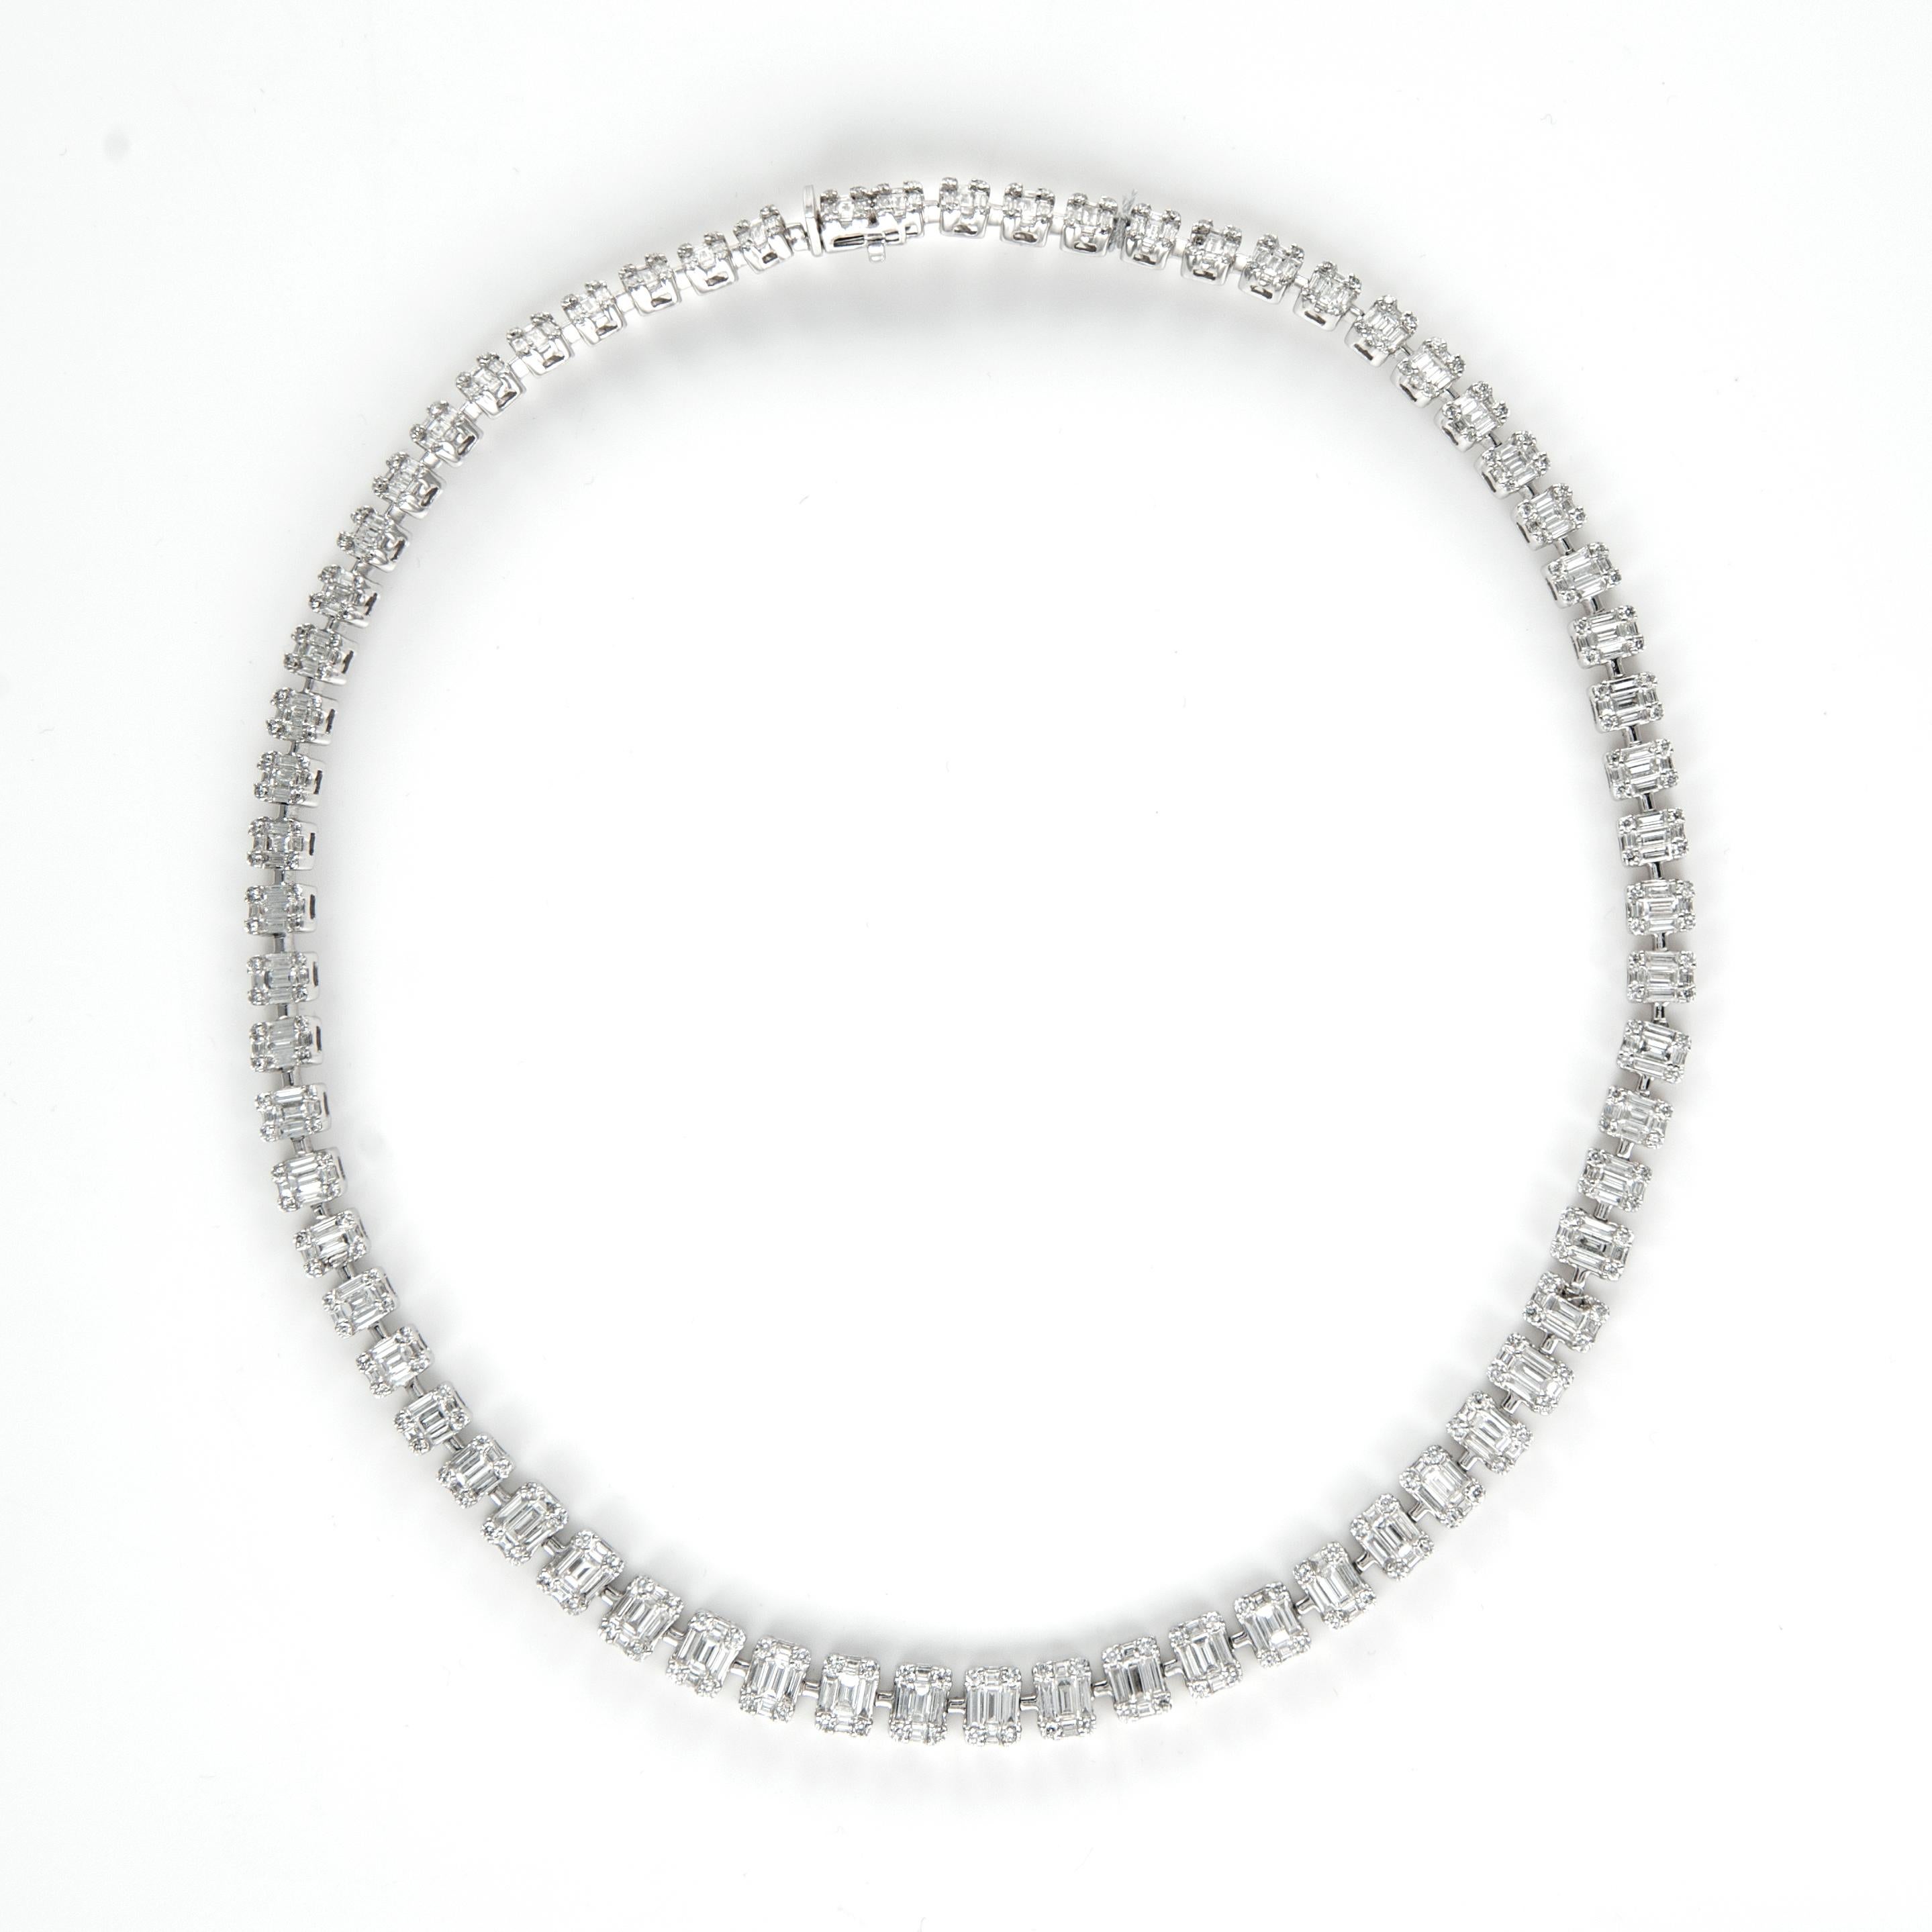 Baguette Cut Alexander 17.55ct Illusion Set Diamond Tennis Necklace 18 Karat White Gold